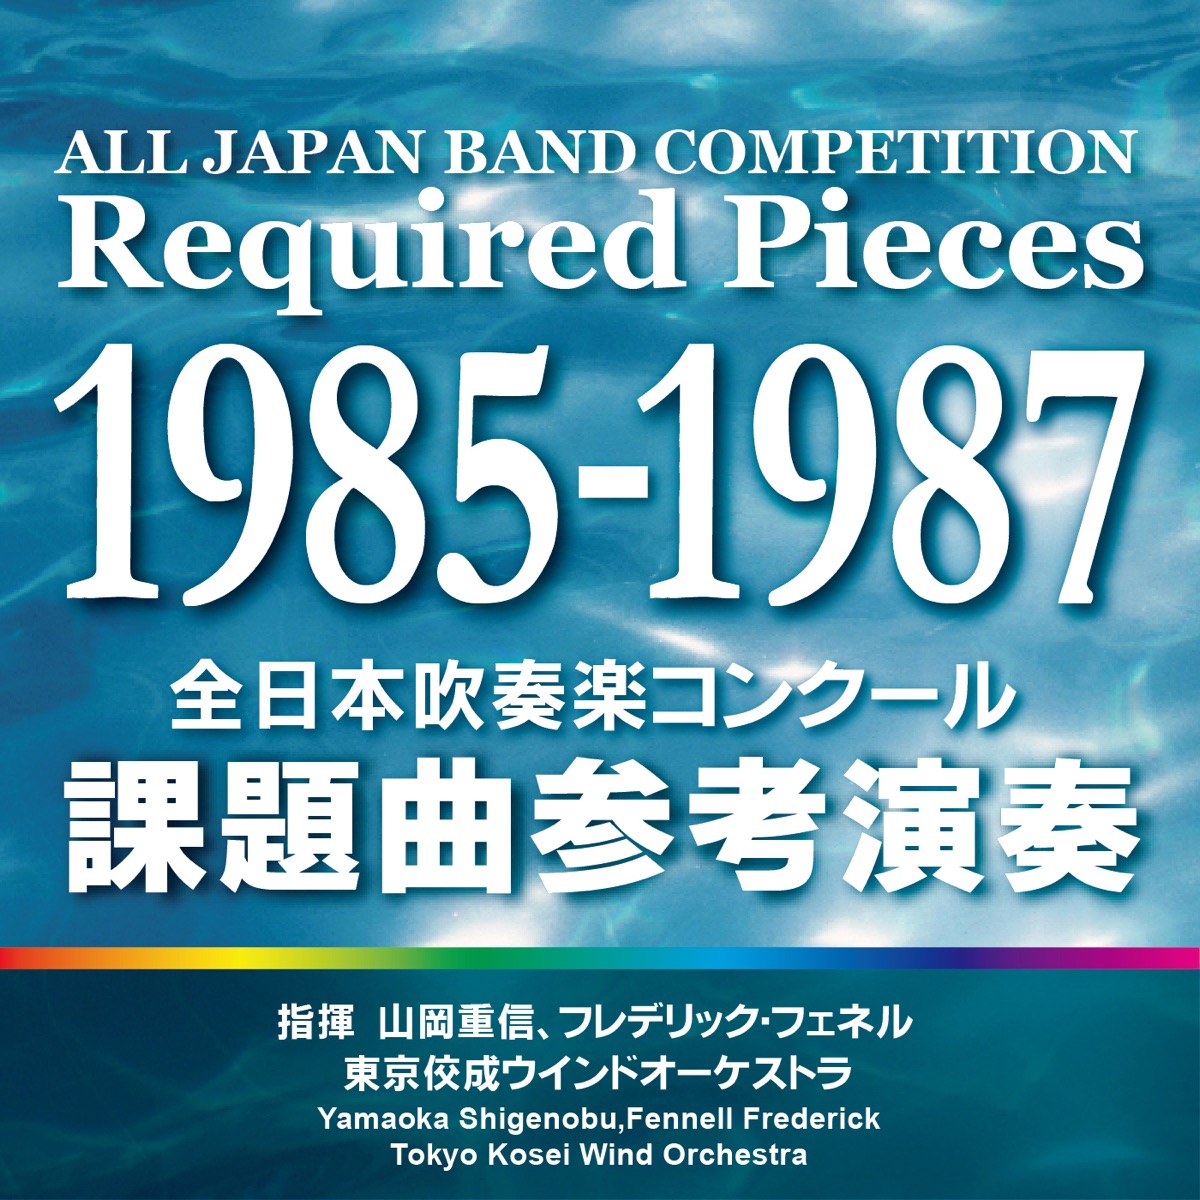 全日本吹奏楽コンクール 課題曲参考演奏 1985-1987 - 東京佼成ウインド